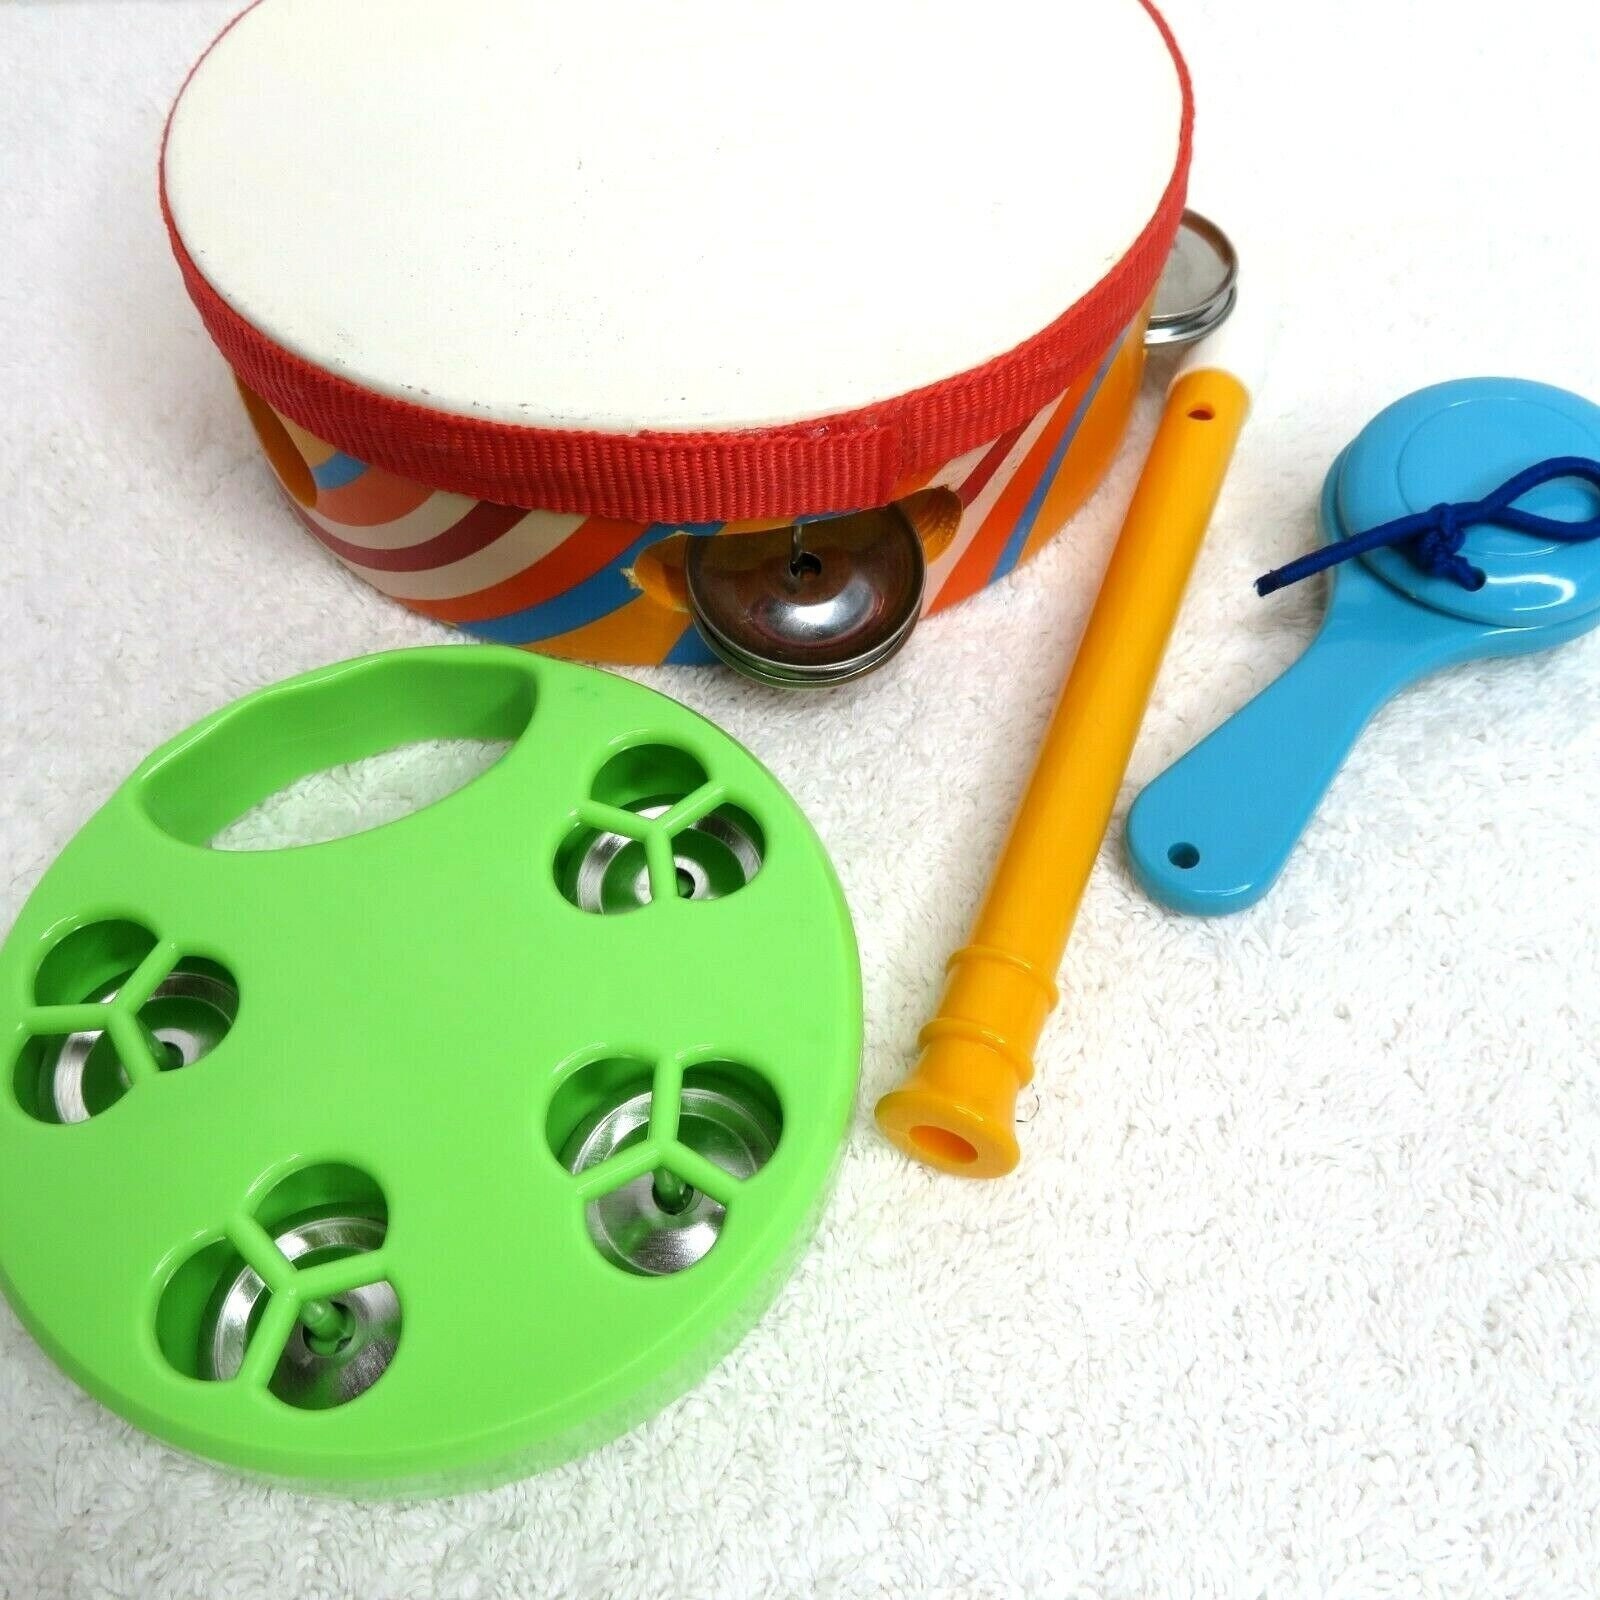 HOHNER VINTAGE KAZOO plastique instrument de musique jouet usa